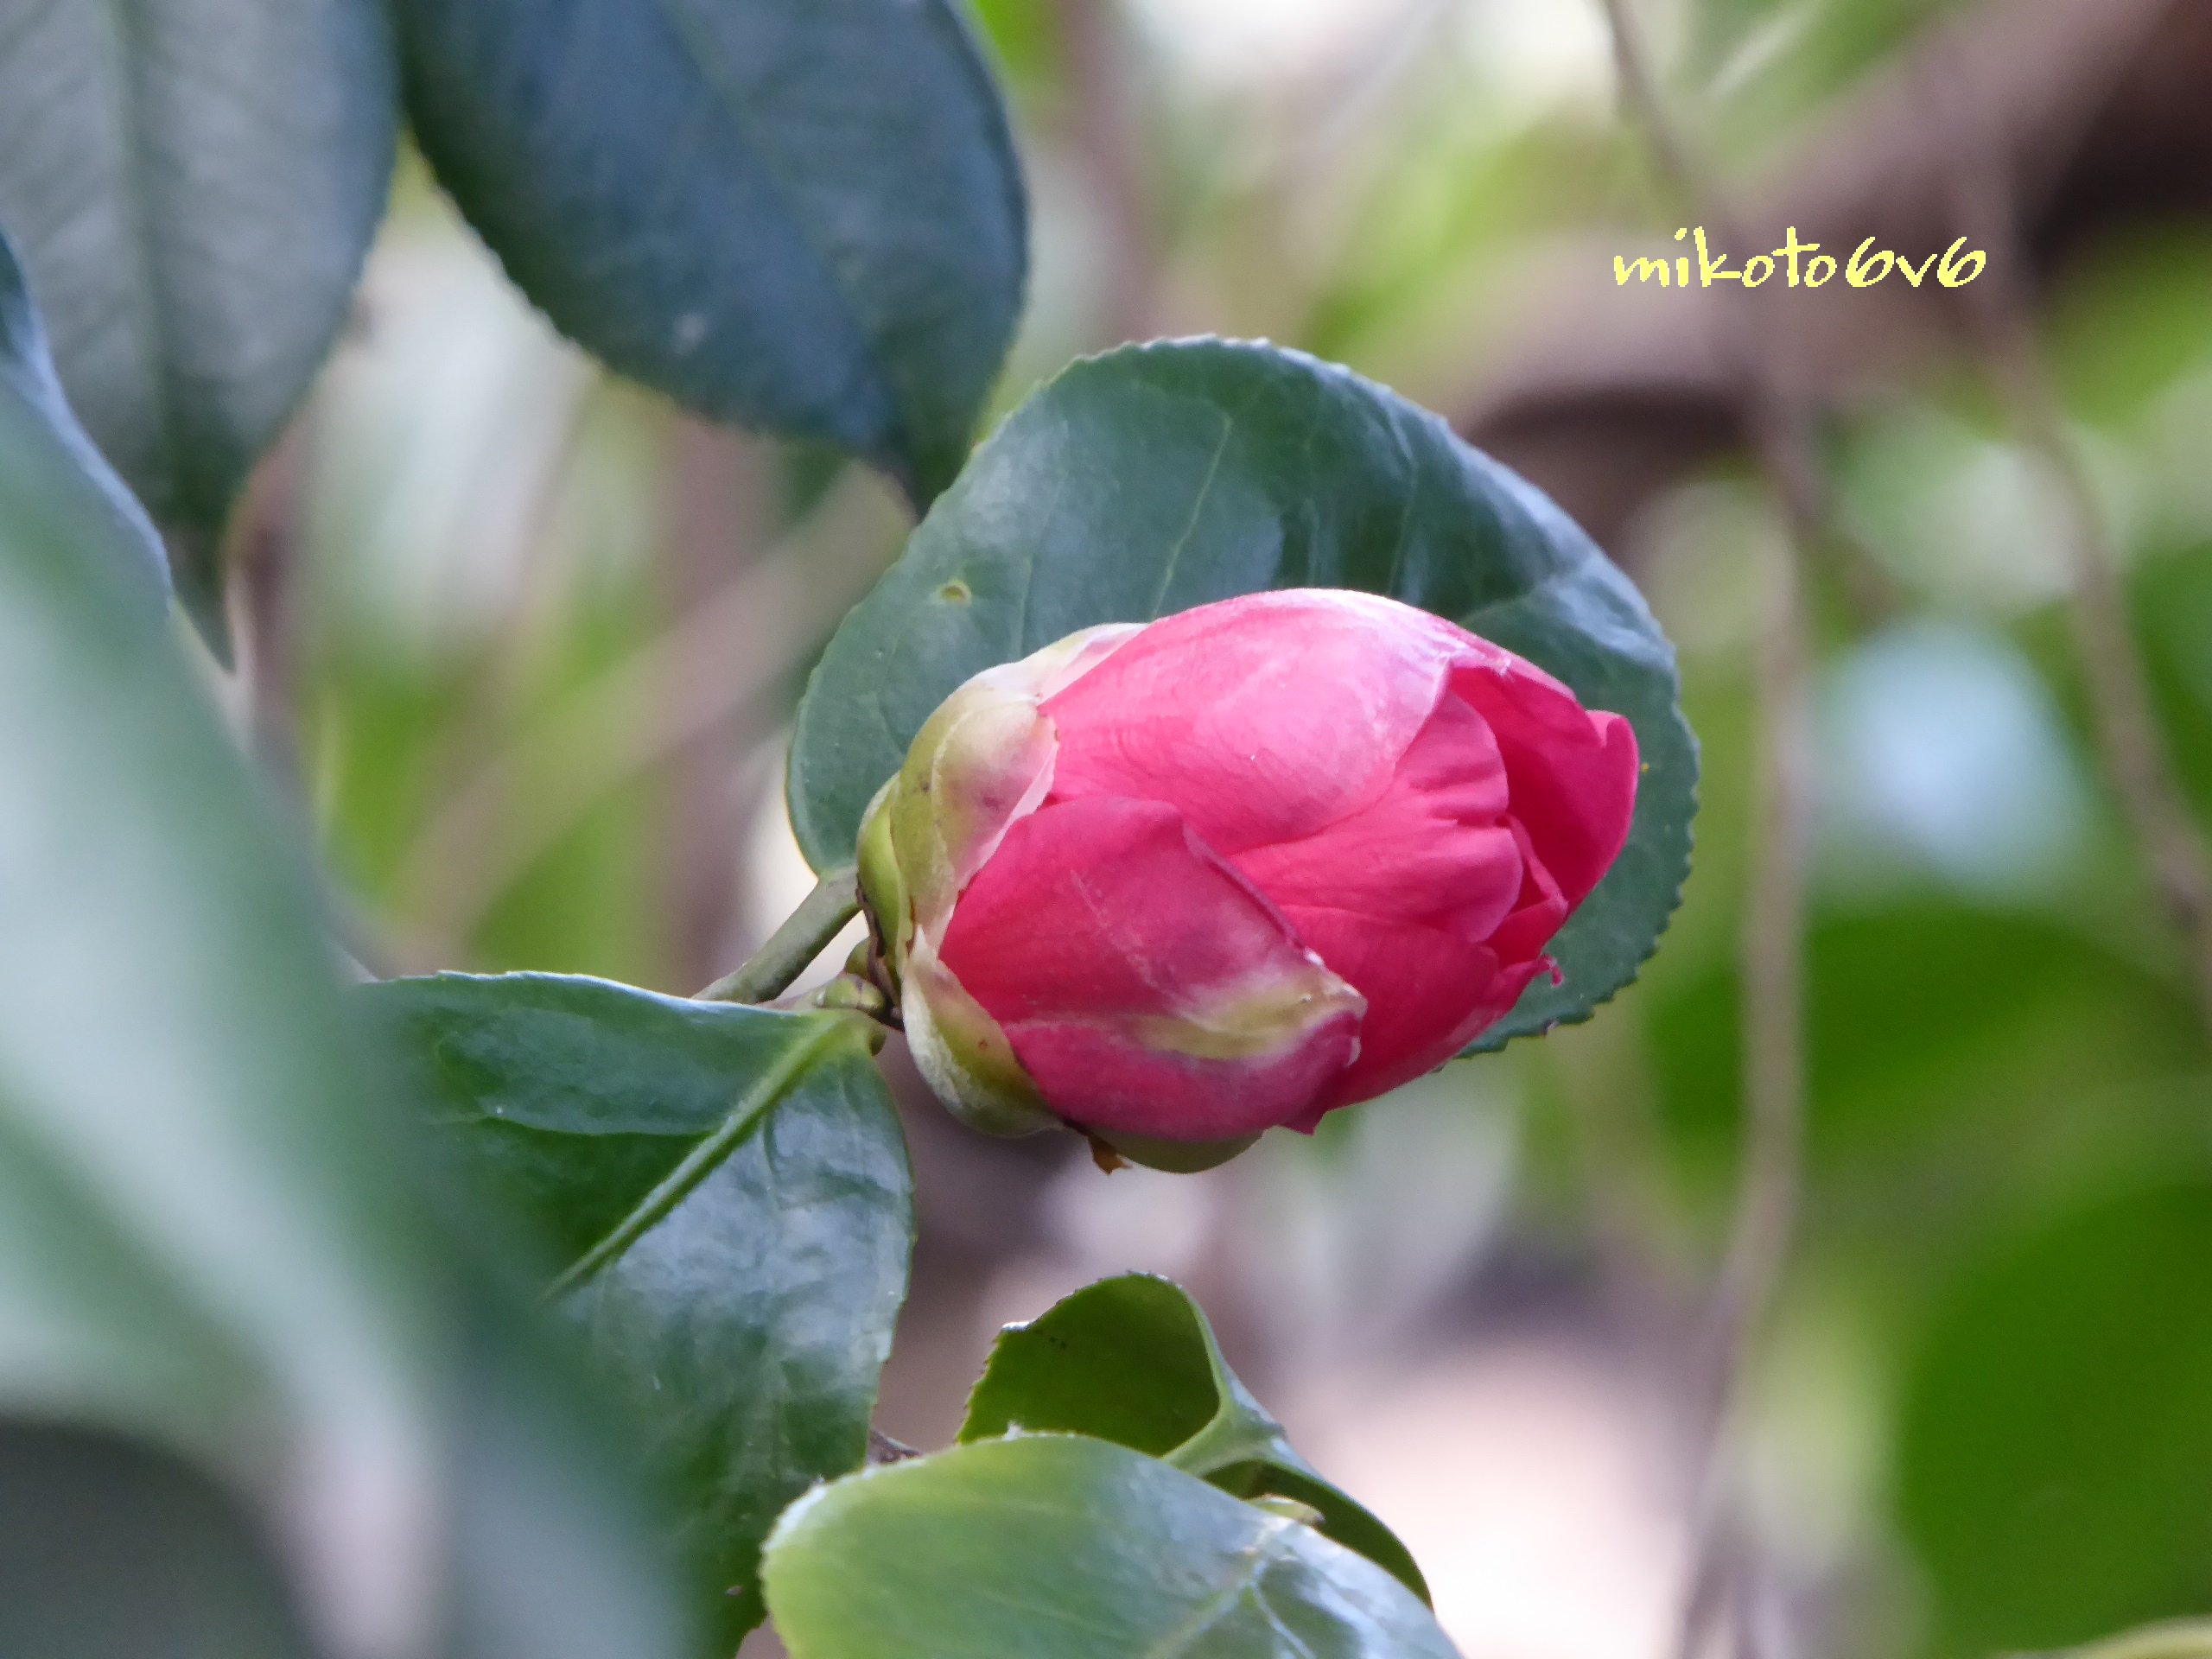 Mikoto ヒッソリと 藪の中で見つけた希望 花言葉 控えめの優しさ 誇り 椿 ツバキ 藪椿 ヤブツバキ イマハナ 花 蕾 ツボミ 無加工 Flower Camellia Camelliajaponica T Co Bozxforfax Twitter